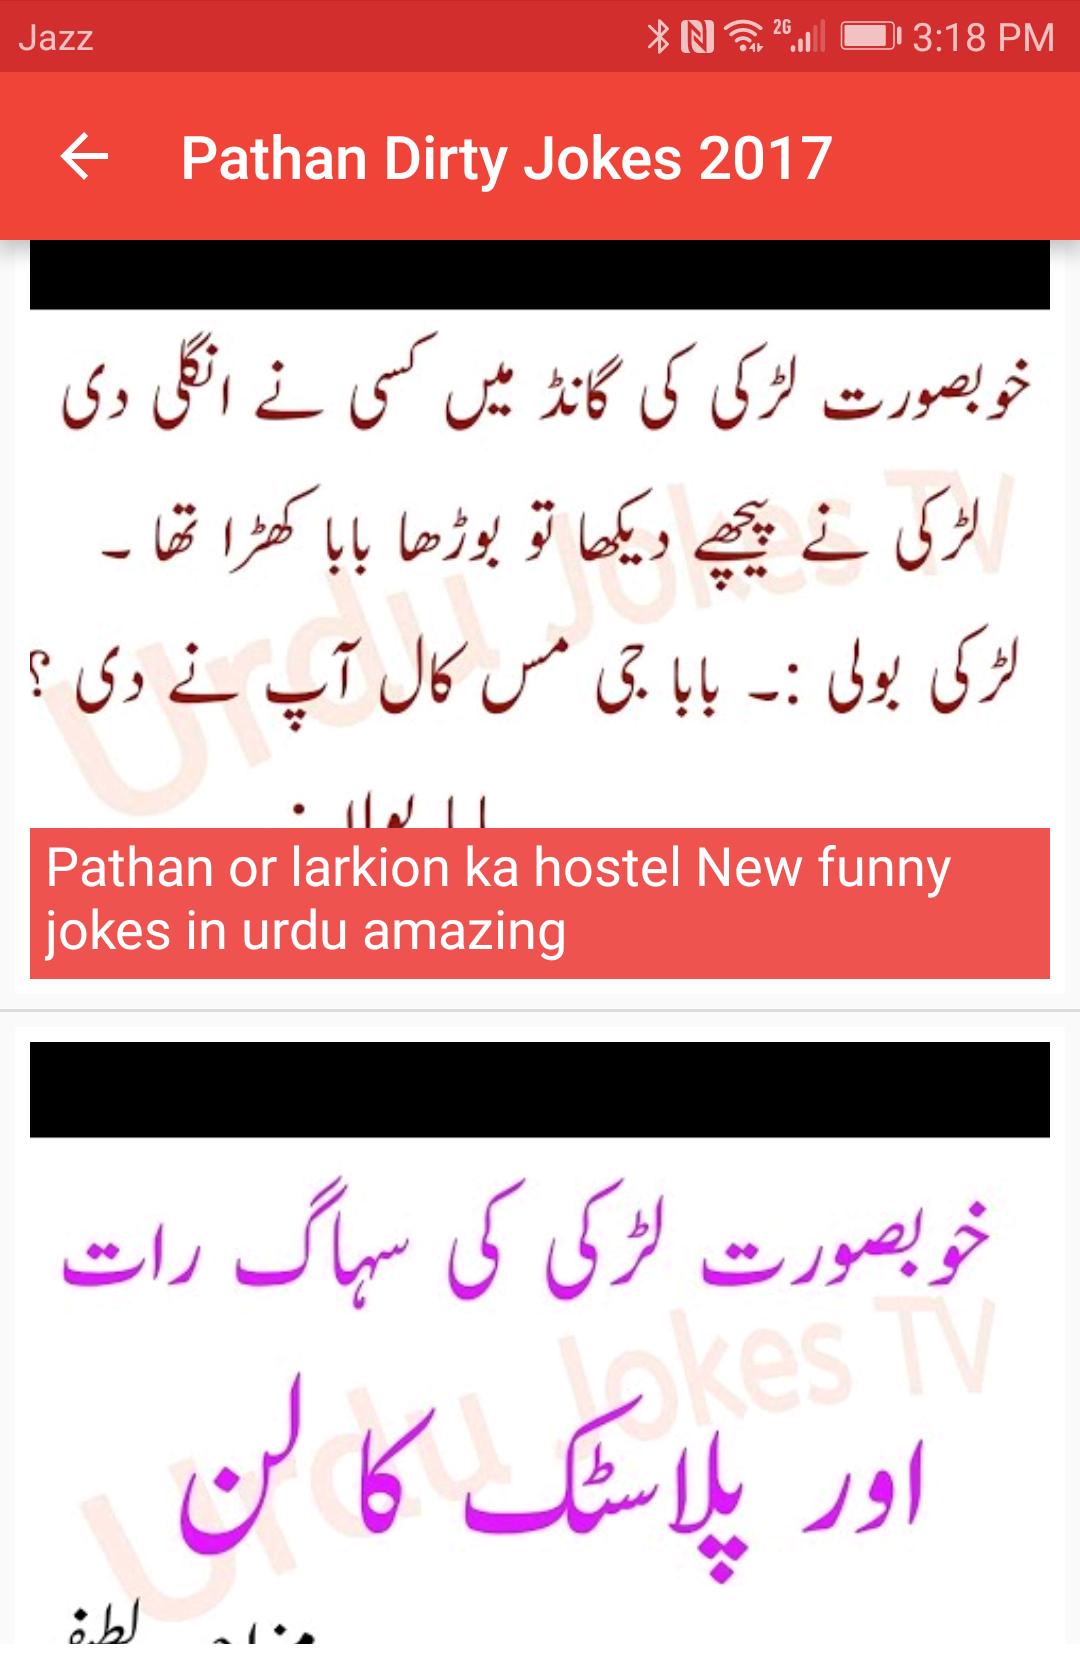 desi jokes in urdu